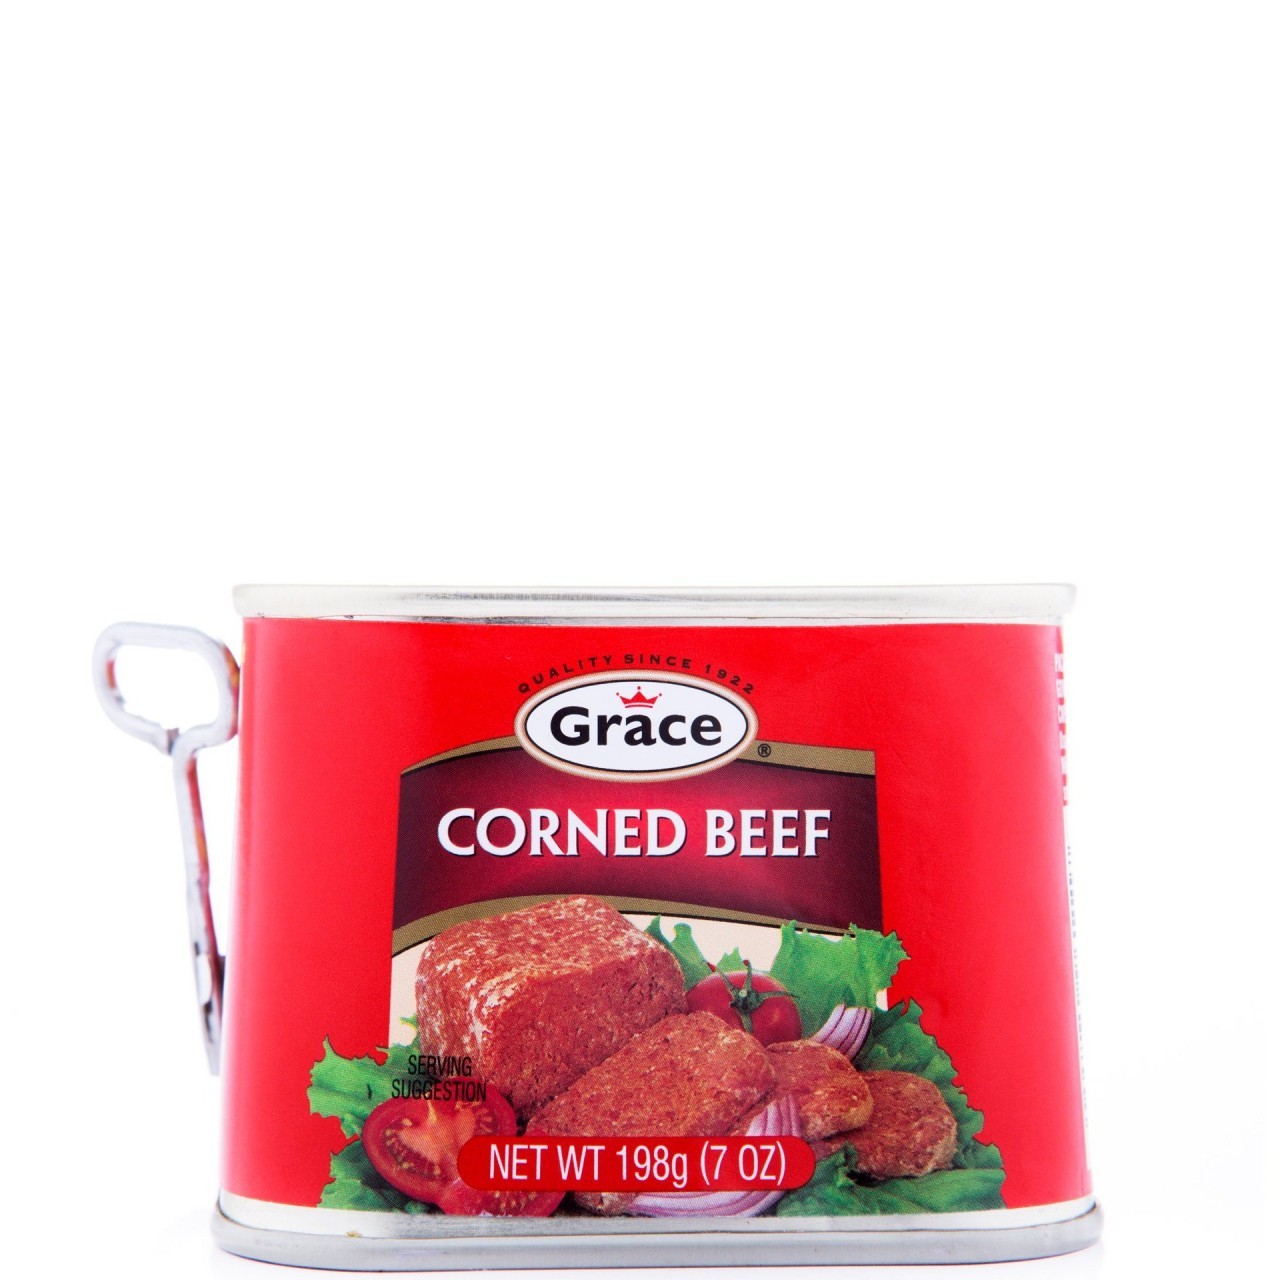 GRACE CORNED BEEF 7oz